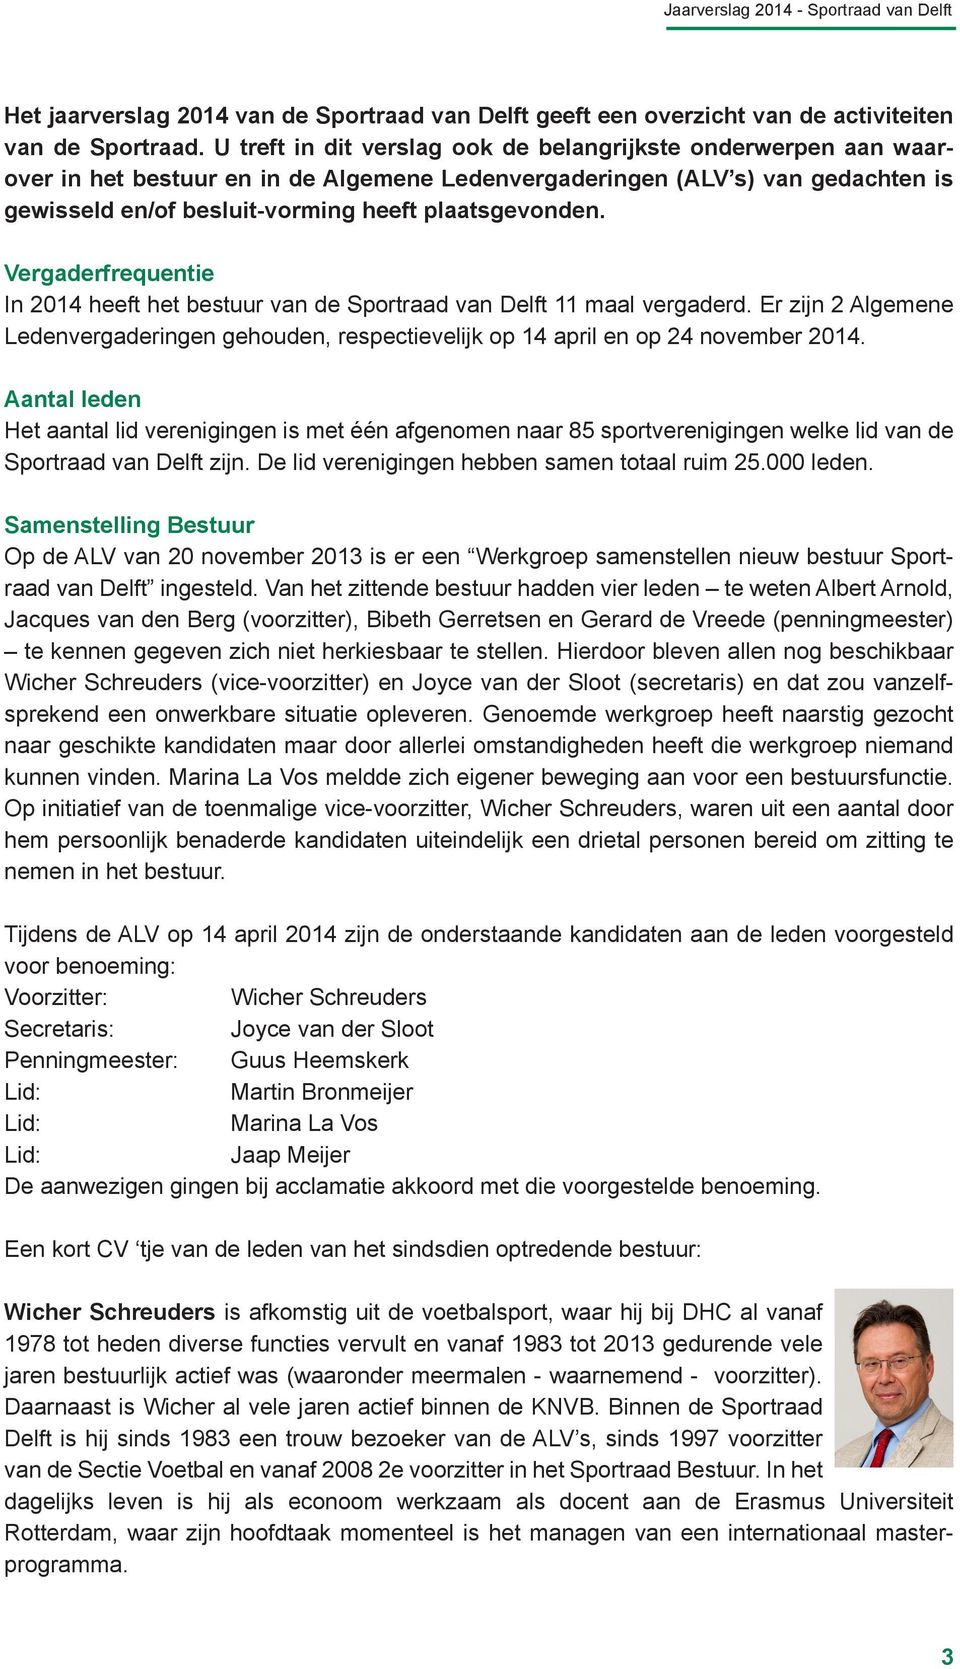 Vergaderfrequentie In 2014 heeft het bestuur van de Sportraad van Delft 11 maal vergaderd. Er zijn 2 Algemene Ledenvergaderingen gehouden, respectievelijk op 14 april en op 24 november 2014.